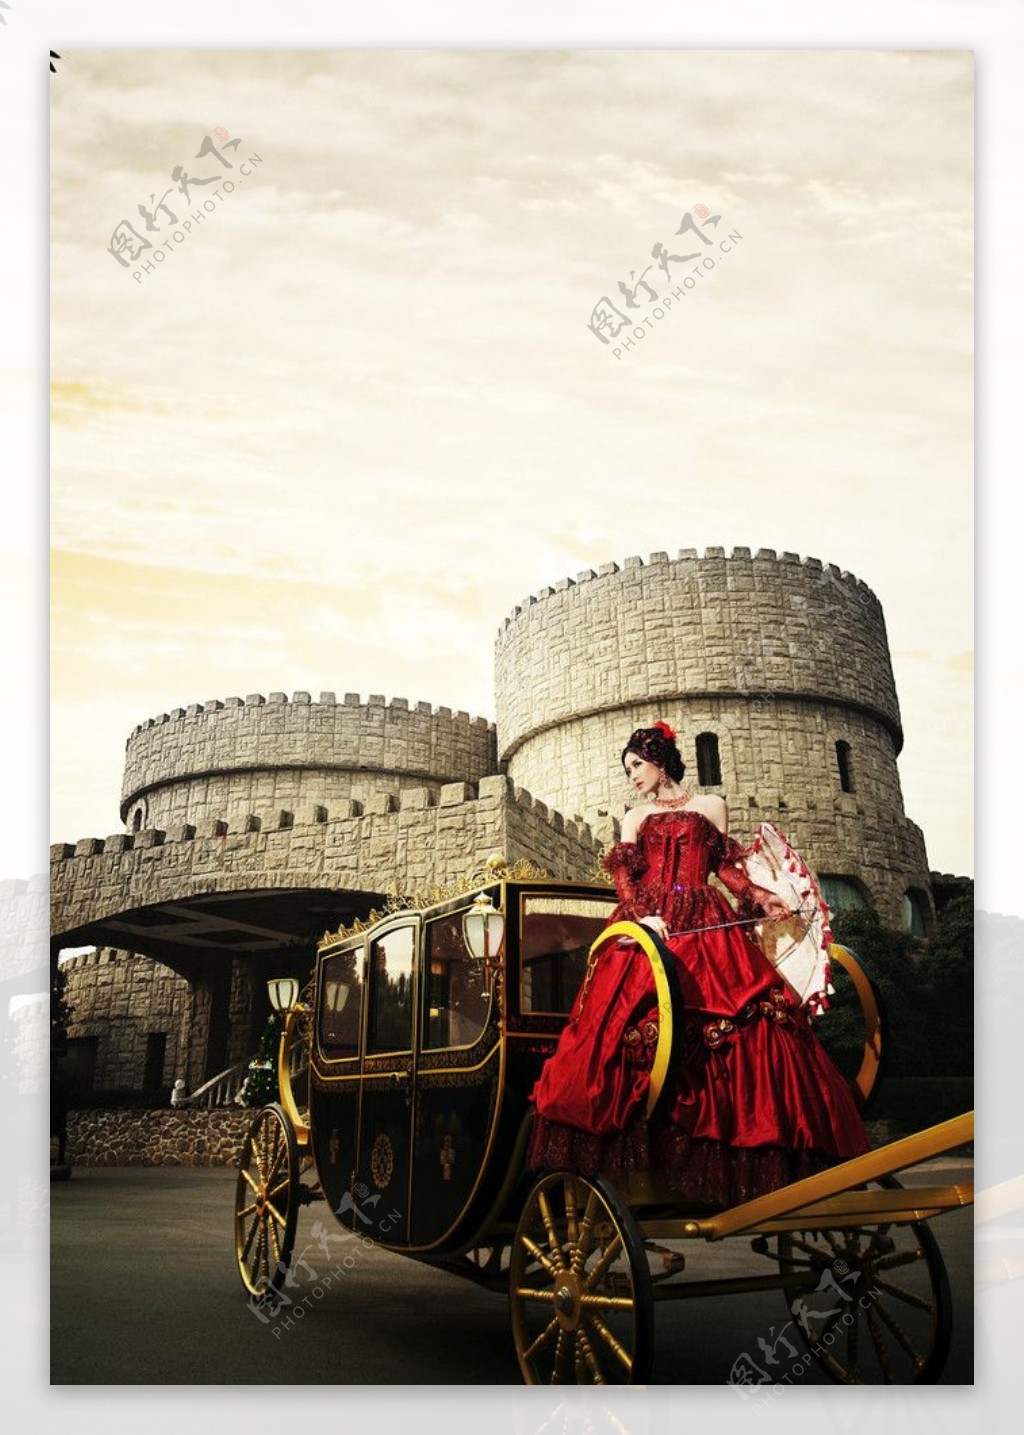 布拉格城堡 - 最美外景 - 古摄影婚纱艺术-古摄影成都婚纱摄影艺术摄影网